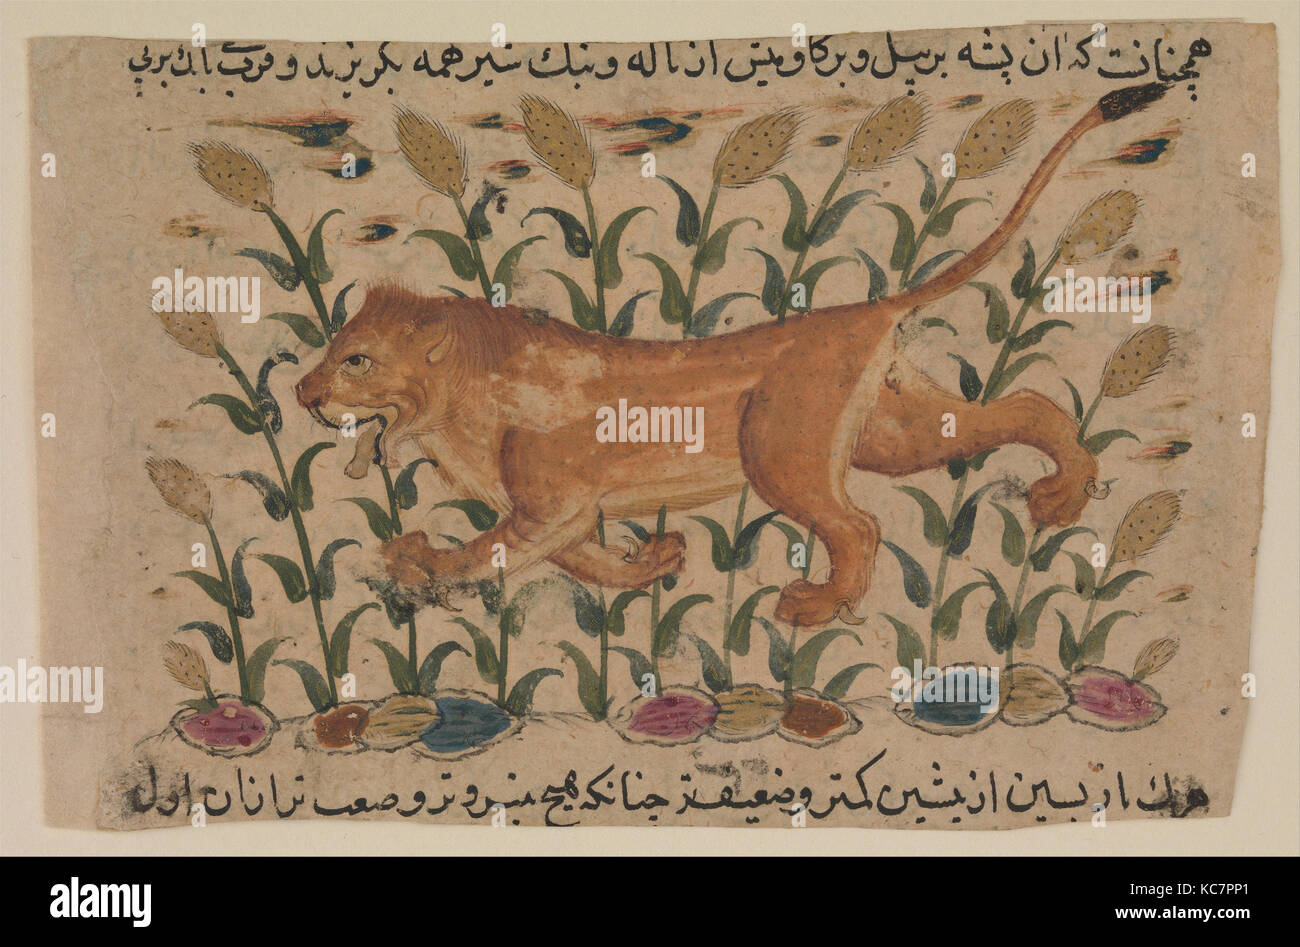 ' Un Lion', folio d'un Nuzhatnama dispersés-i 'Ala'i d'Shahmardan ibn Abi'l Khayr, début du 17e siècle Banque D'Images